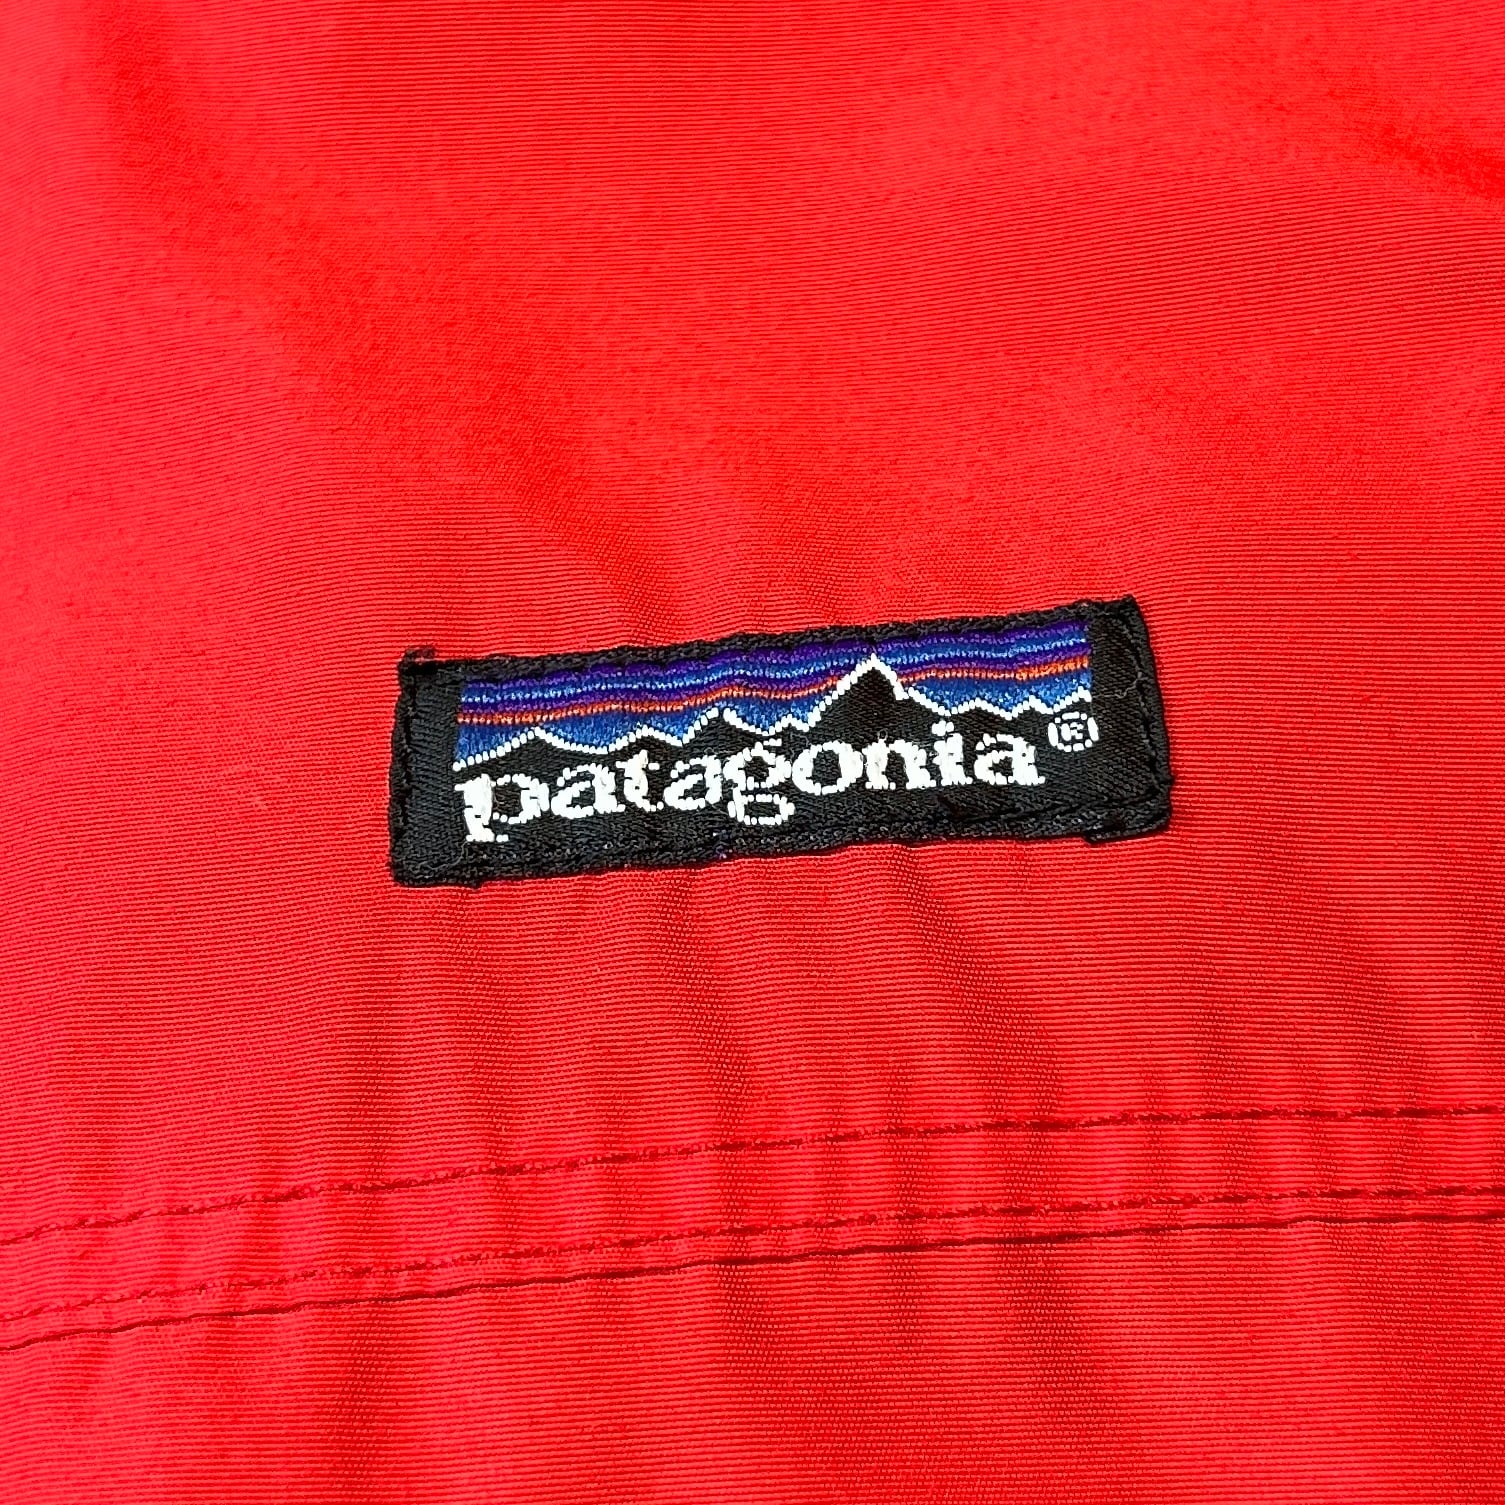 80-94s patagoniaパタゴニア シェルドシンチラ ナイロンジャケット